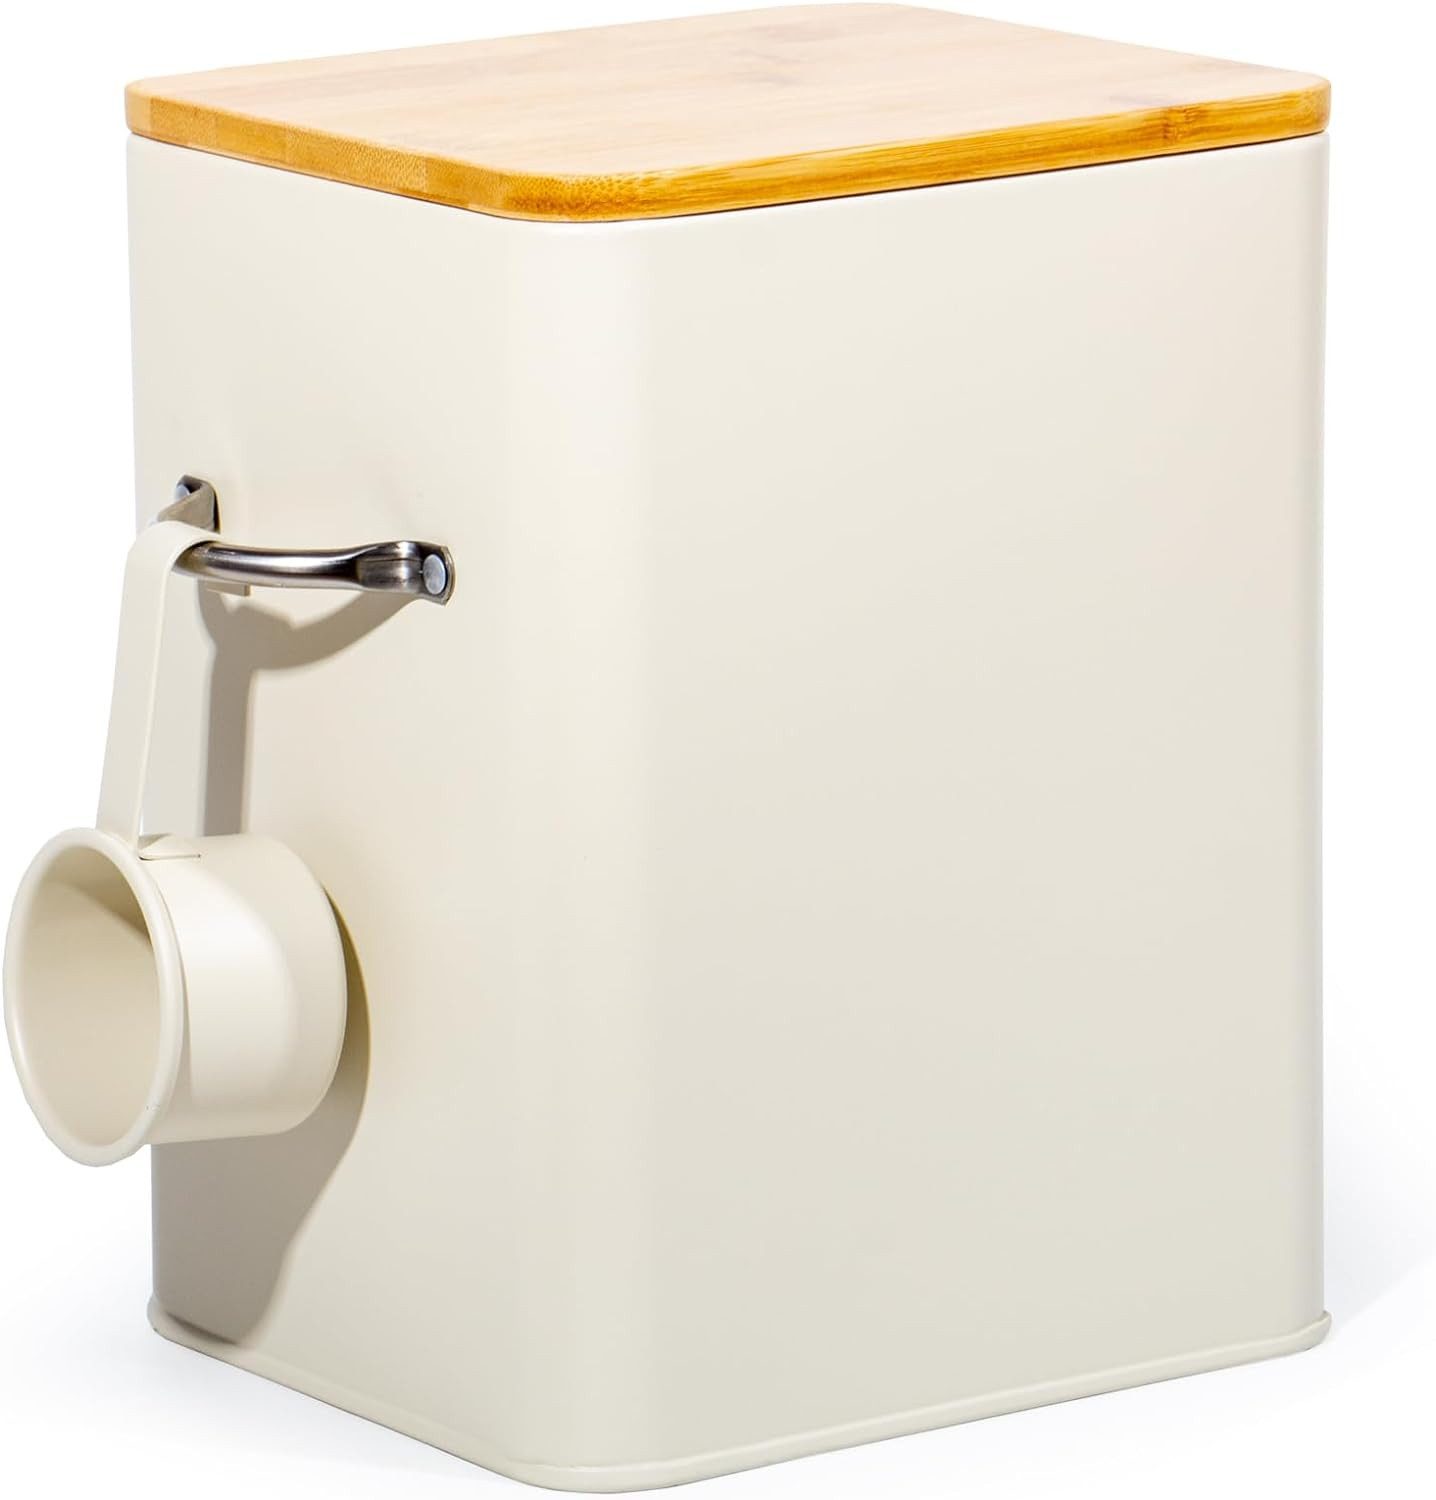 Zedelmaier Aufbewahrungsbox Waschpulver-box Waschmittelbox 6.5L (Satz, 1 box+Deckel+Schaufel), Multifunktionale Aufbewahrungsbox für Hundefutter, Katzenfutter